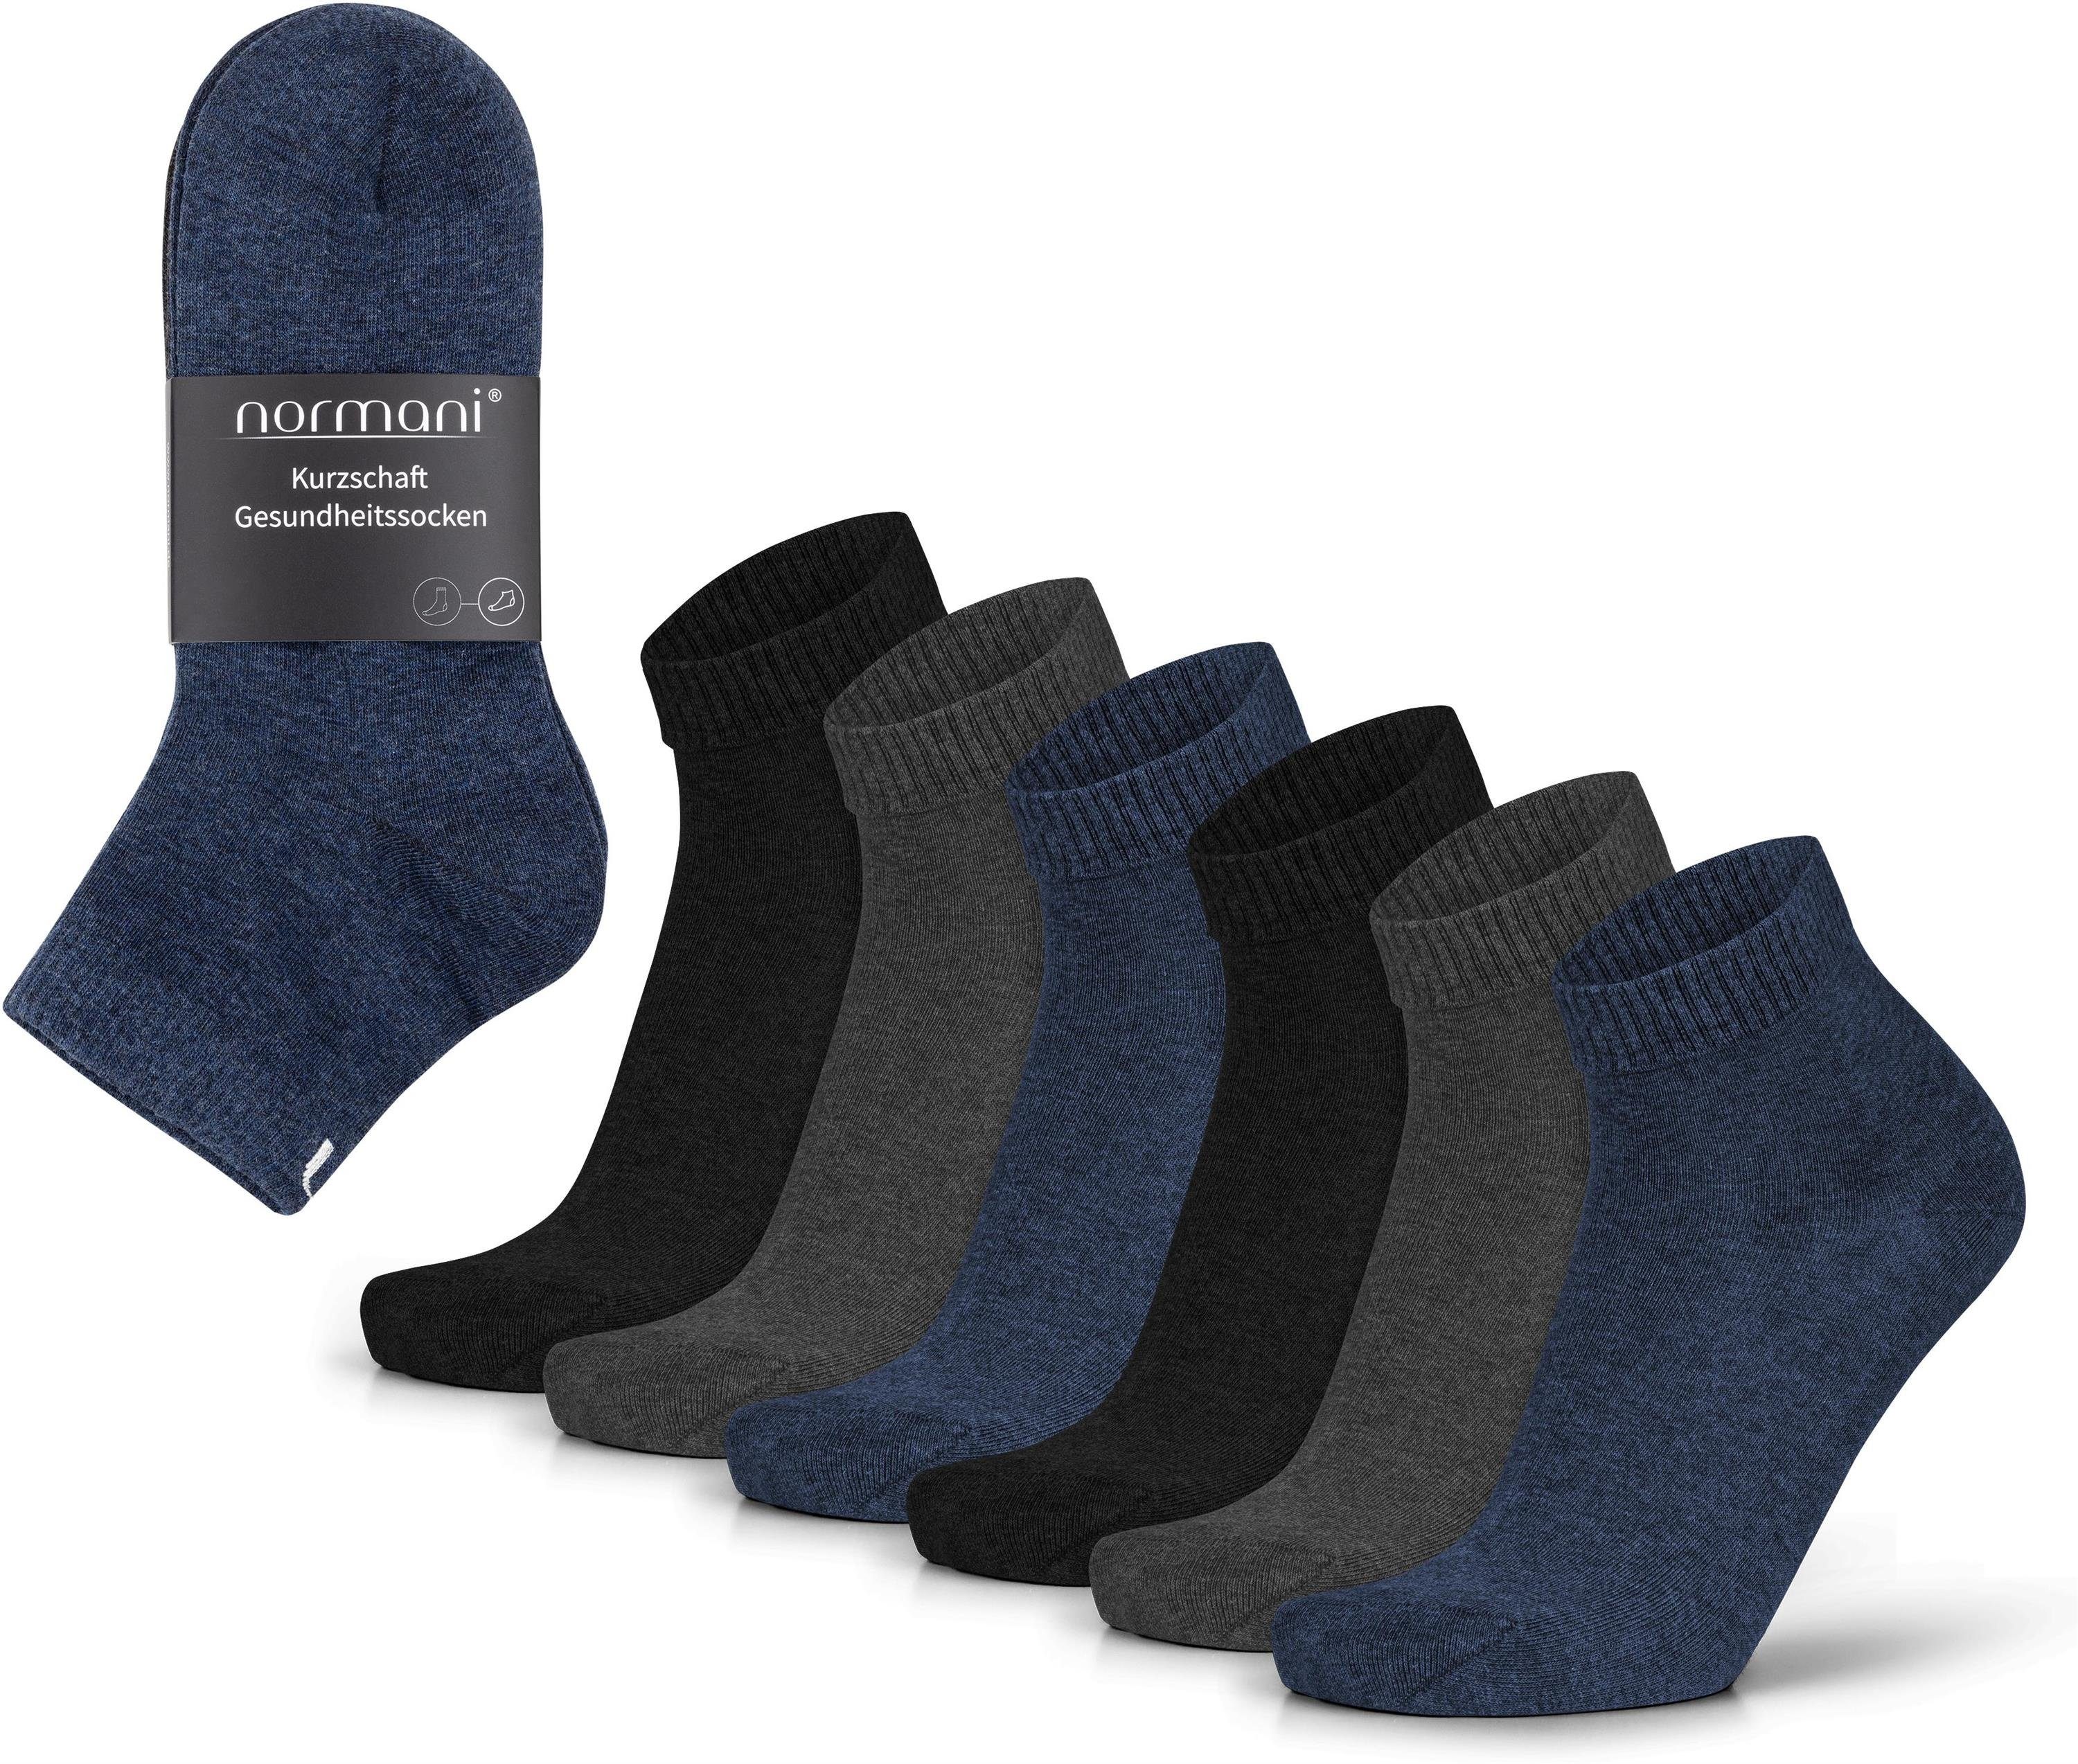 normani Sneakersocken (6 Paar) Kurzschaft Baumwolle. Gesundheitssocken Blau/Anthrazit/Schwarz aus